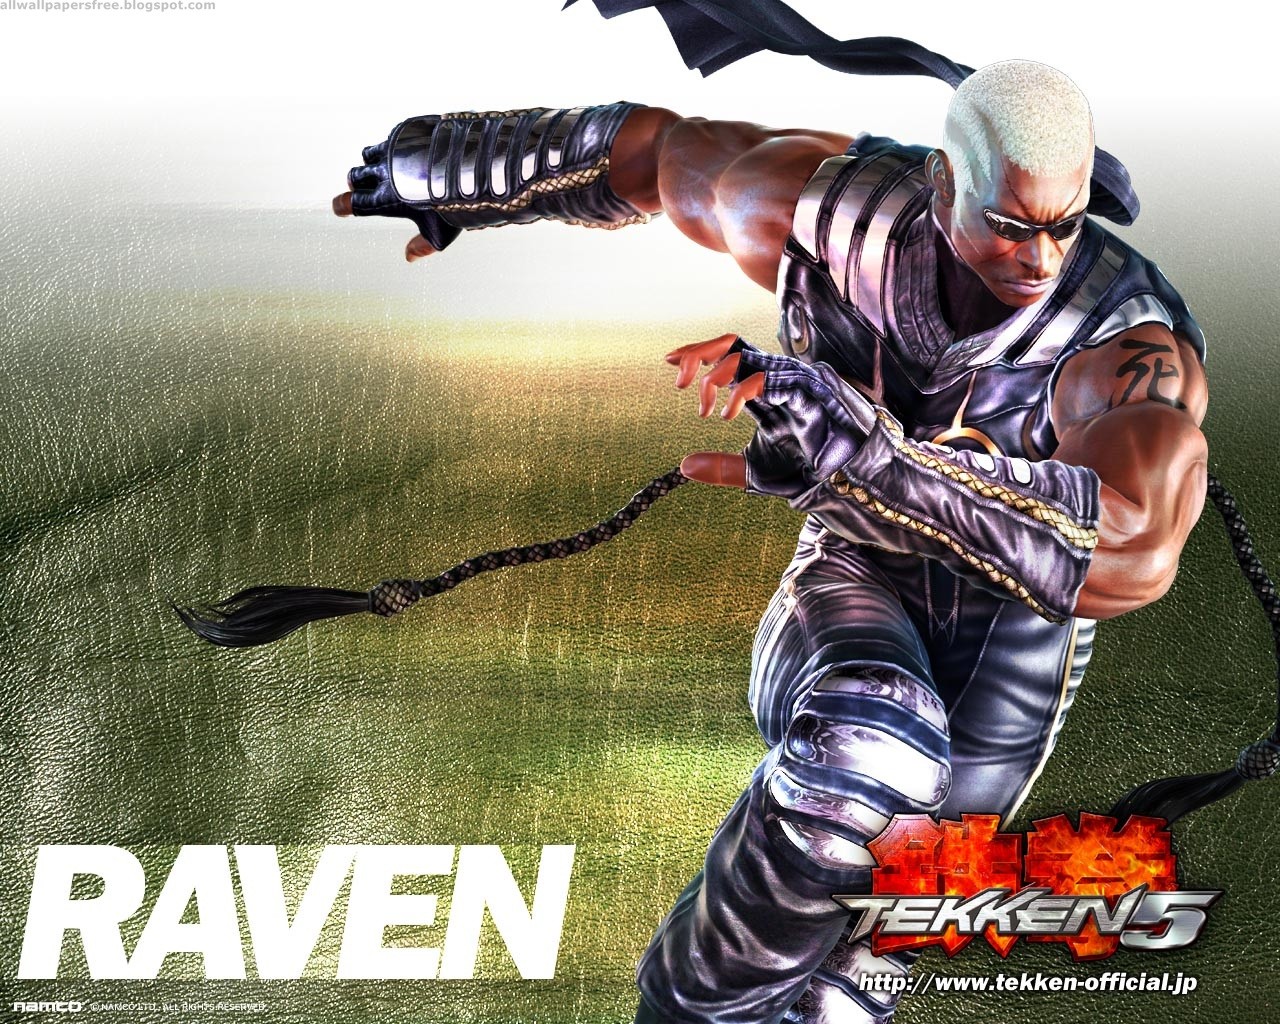 Descarga gratuita de fondo de pantalla para móvil de Videojuego, Tekken 5.